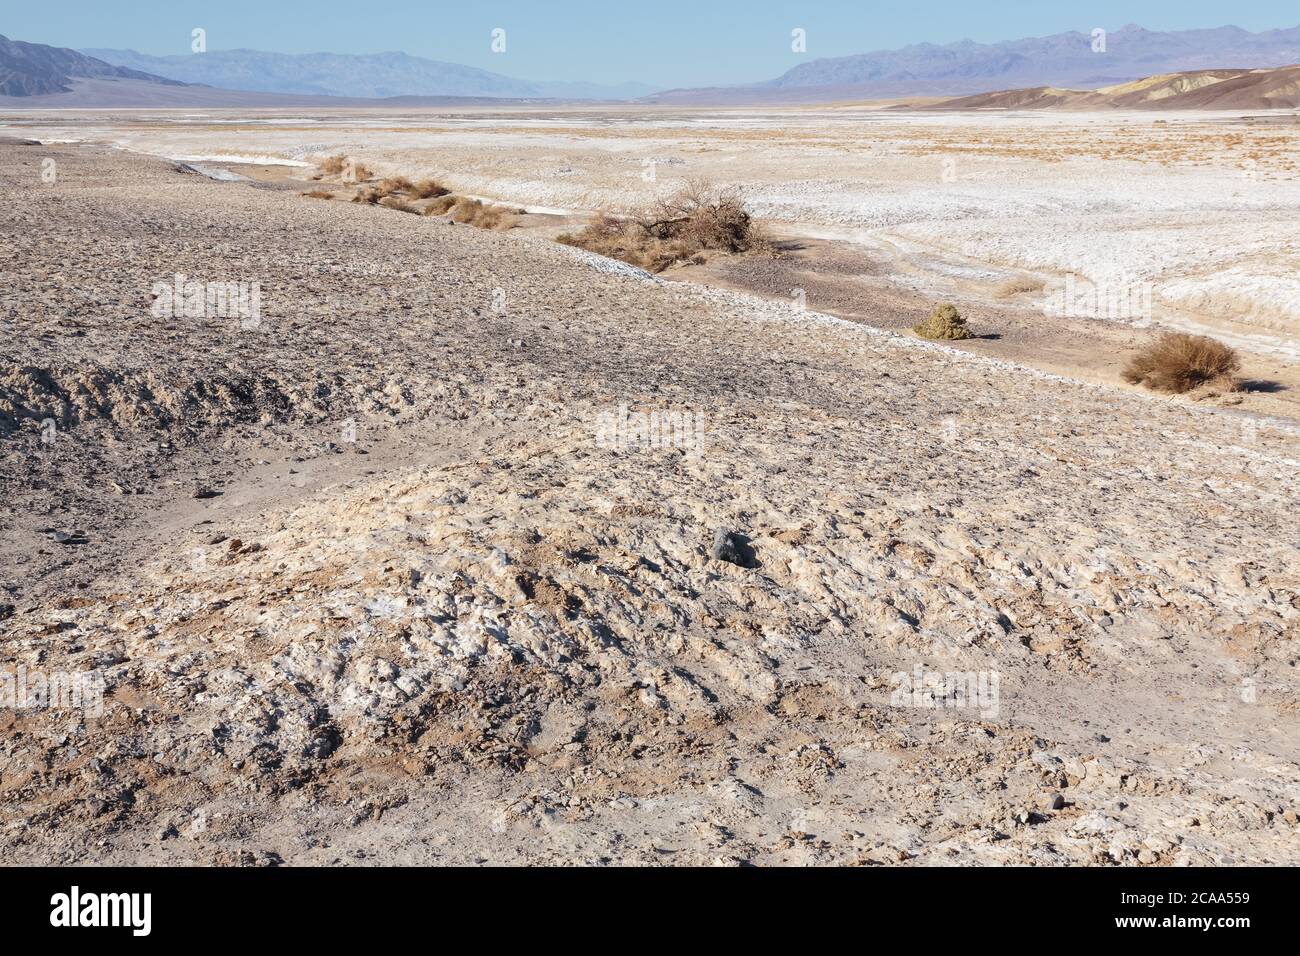 Die bemerkenswerte Landschaft des Death Valley. 3,000 Quadratmeilen Traverse, trockene & feindliche Landschaft. Am besten beobachtet hydratisiert und möglicherweise im Winter. Stockfoto